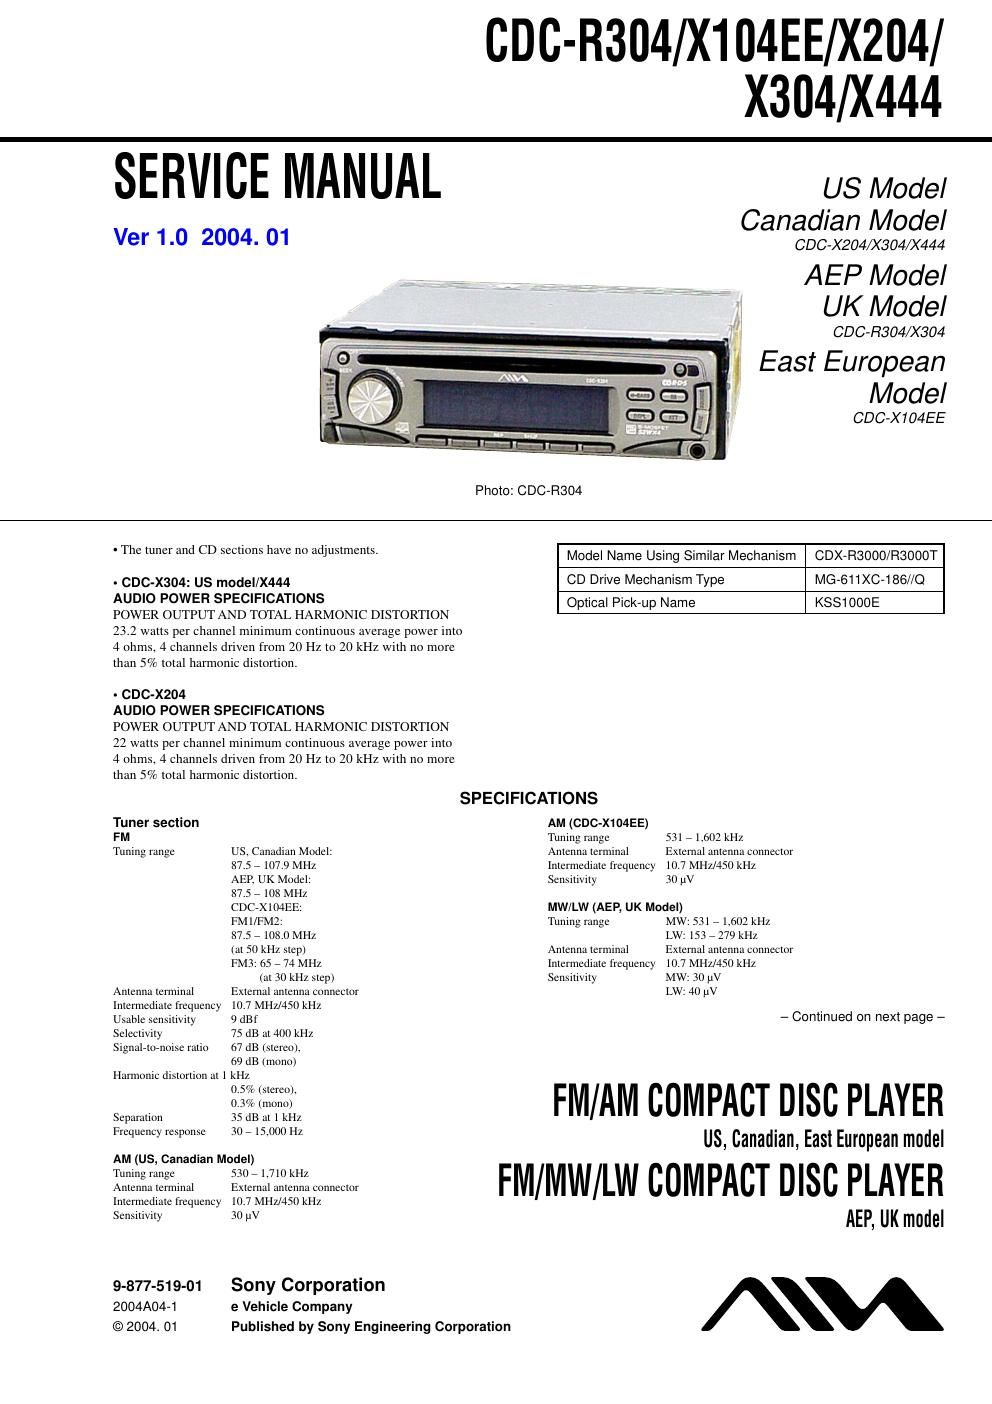 sony cdc x 204 service manual